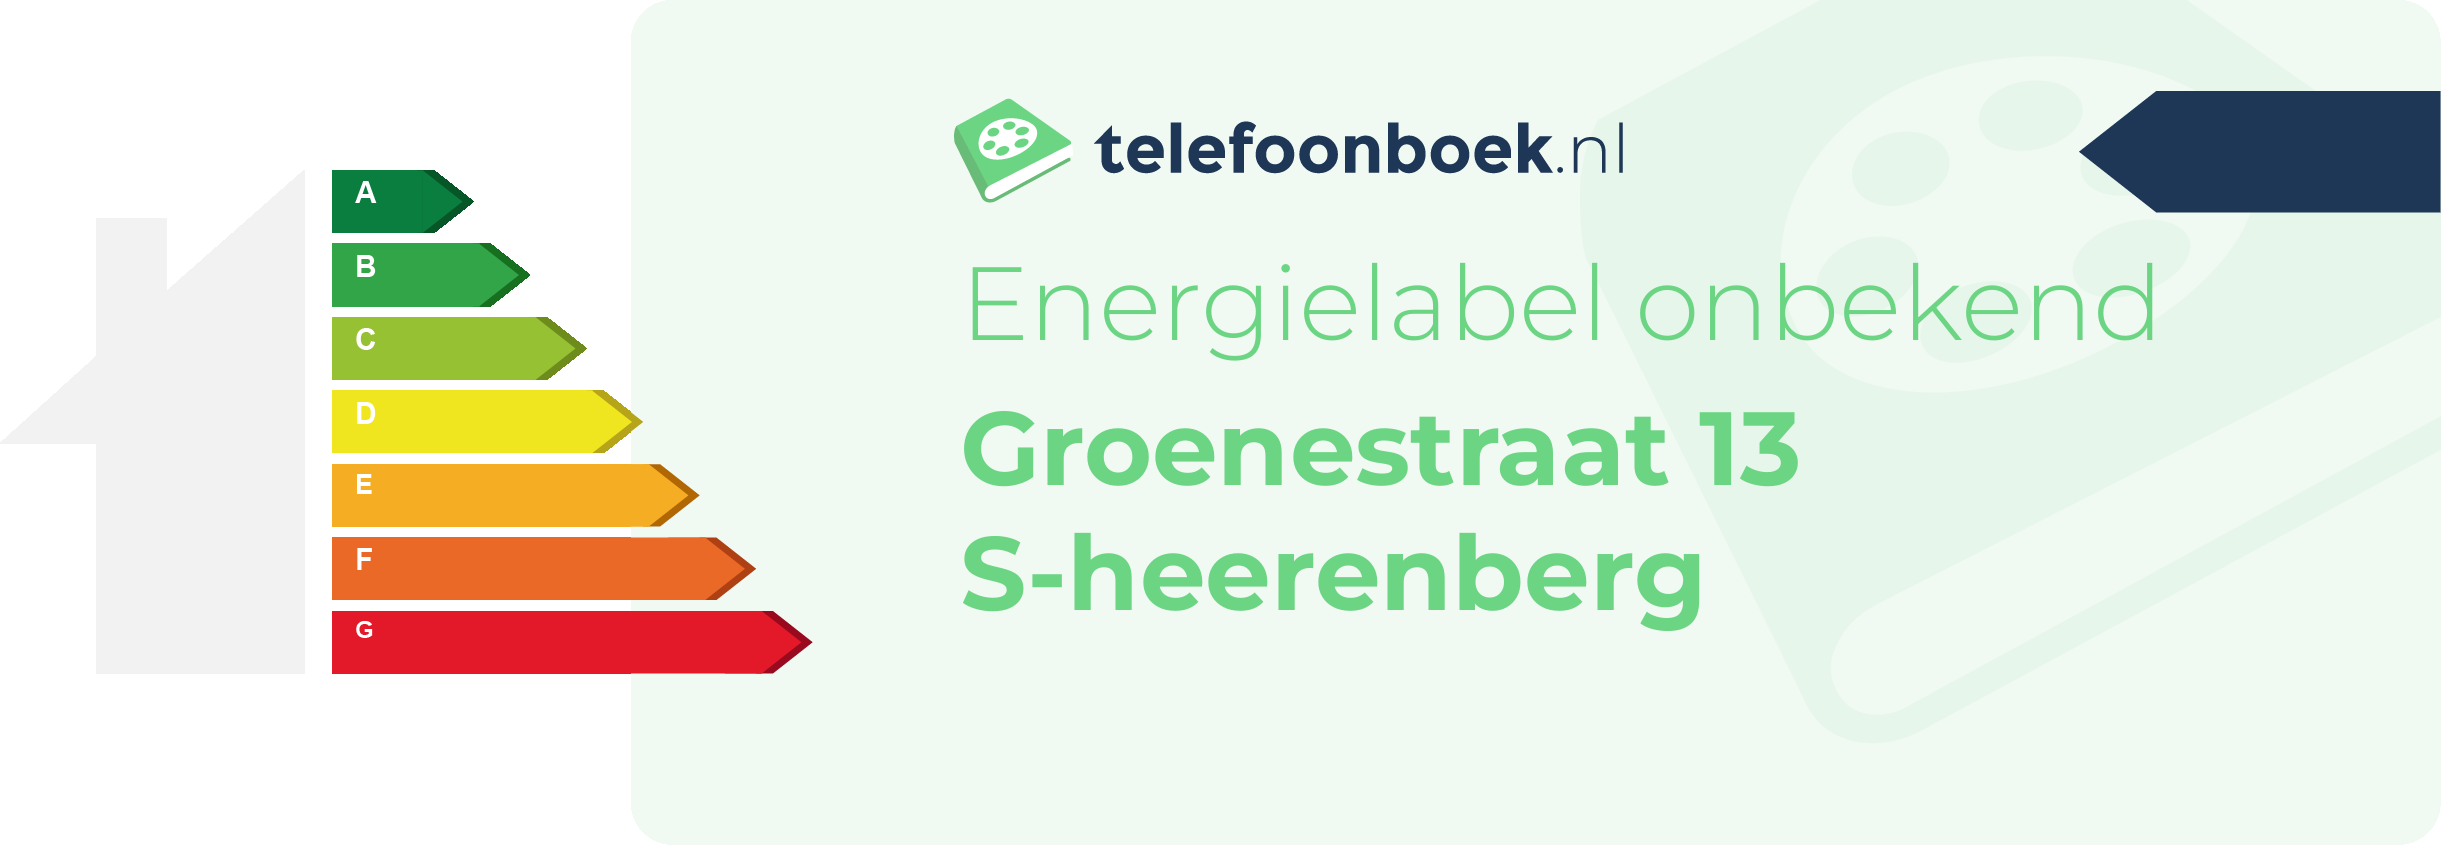 Energielabel Groenestraat 13 S-Heerenberg